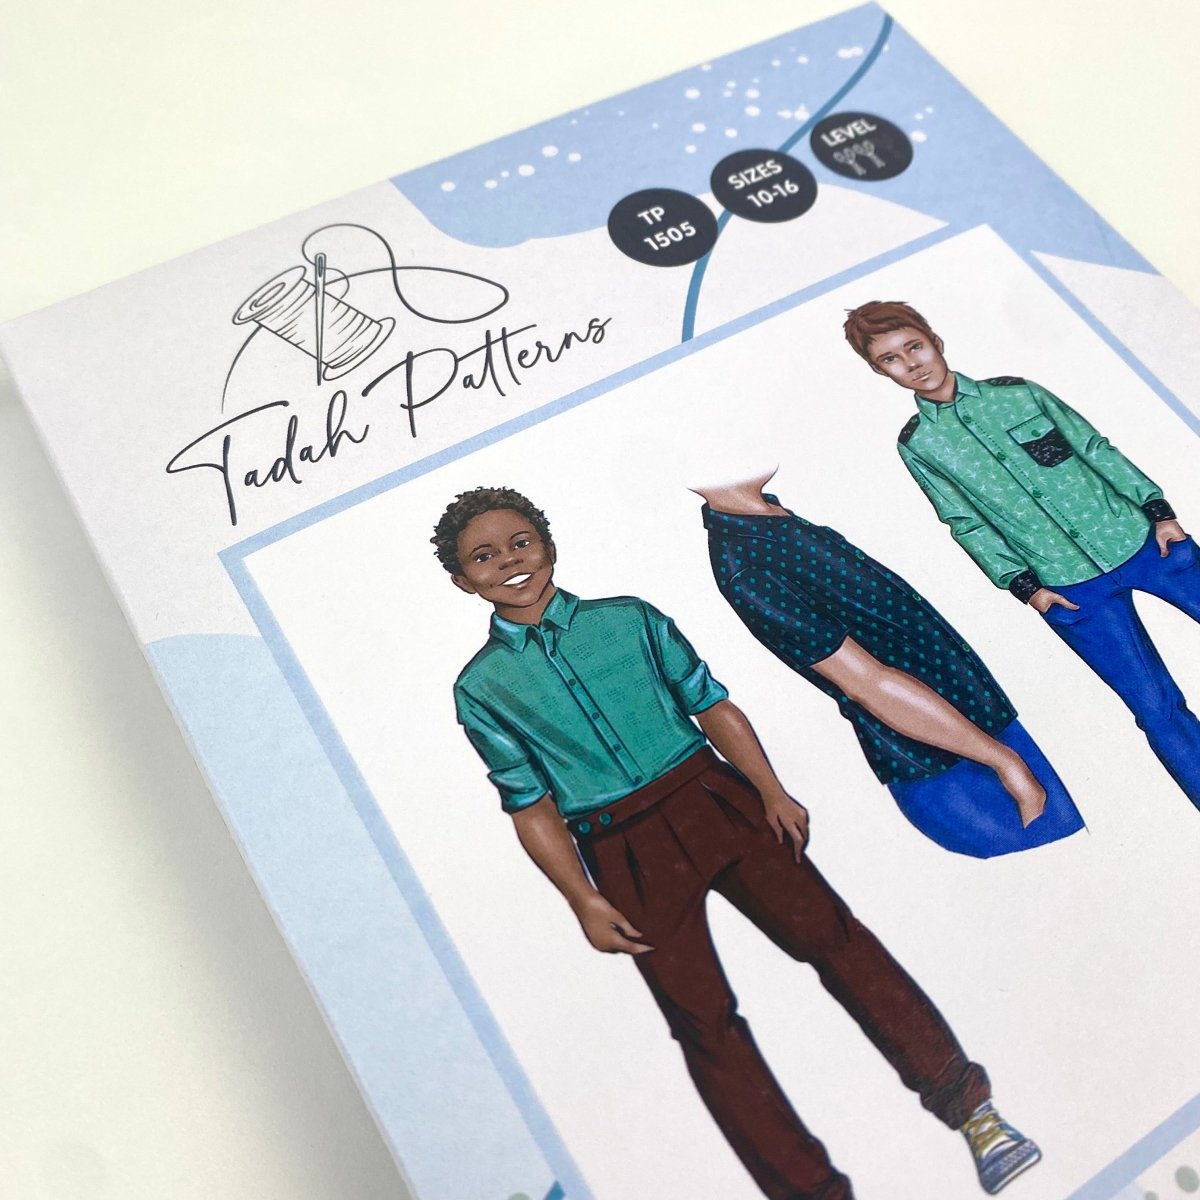 Tadah Patterns - Teen Troop Shirt - Sewing Gem